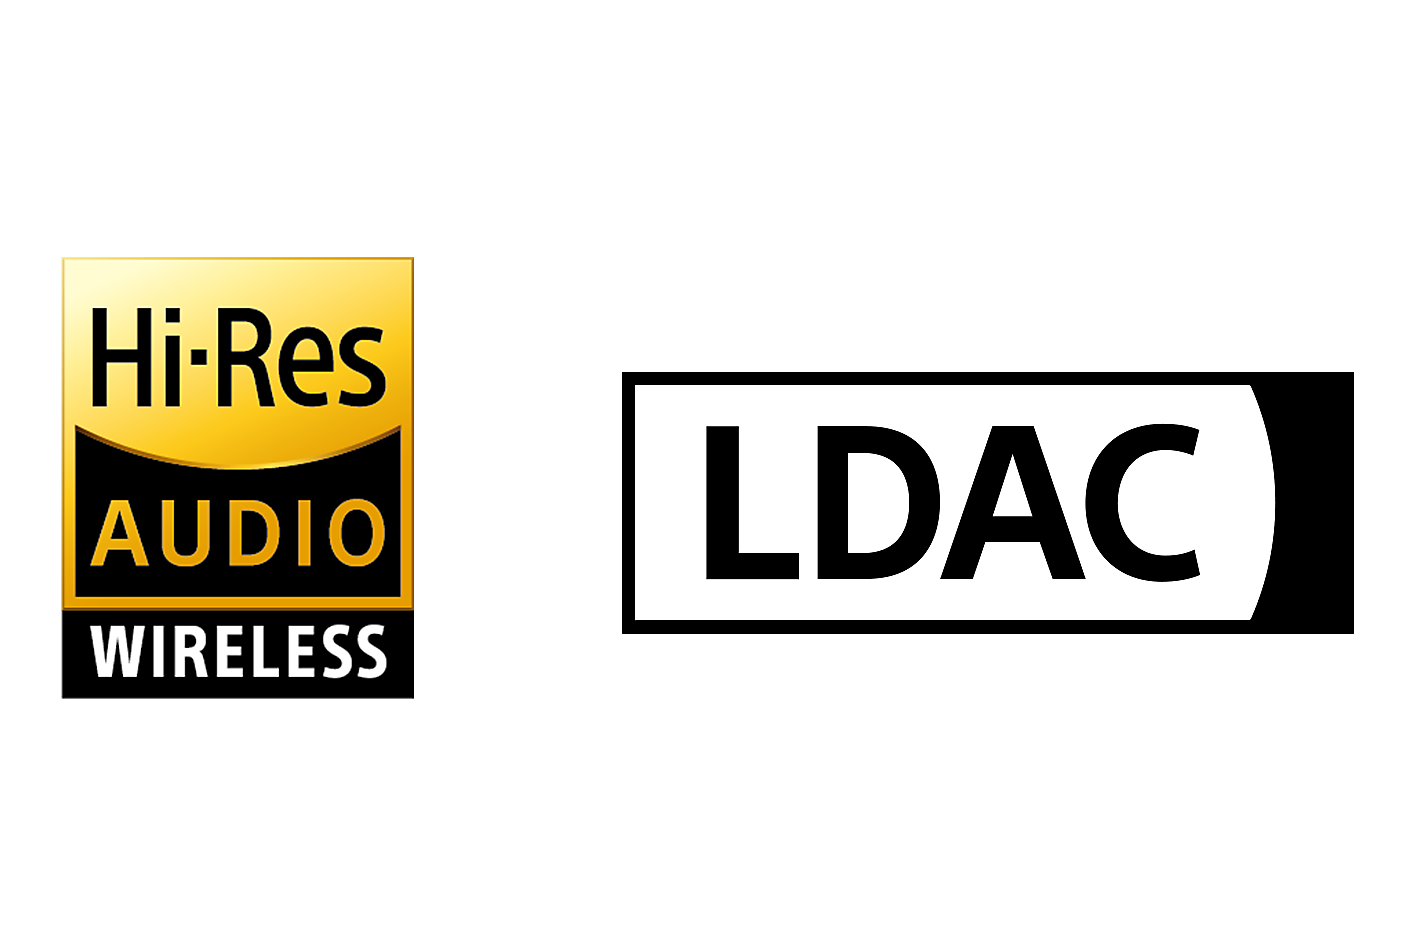 Logotipos de sonido de alta resolución inalámbrico y LDAC